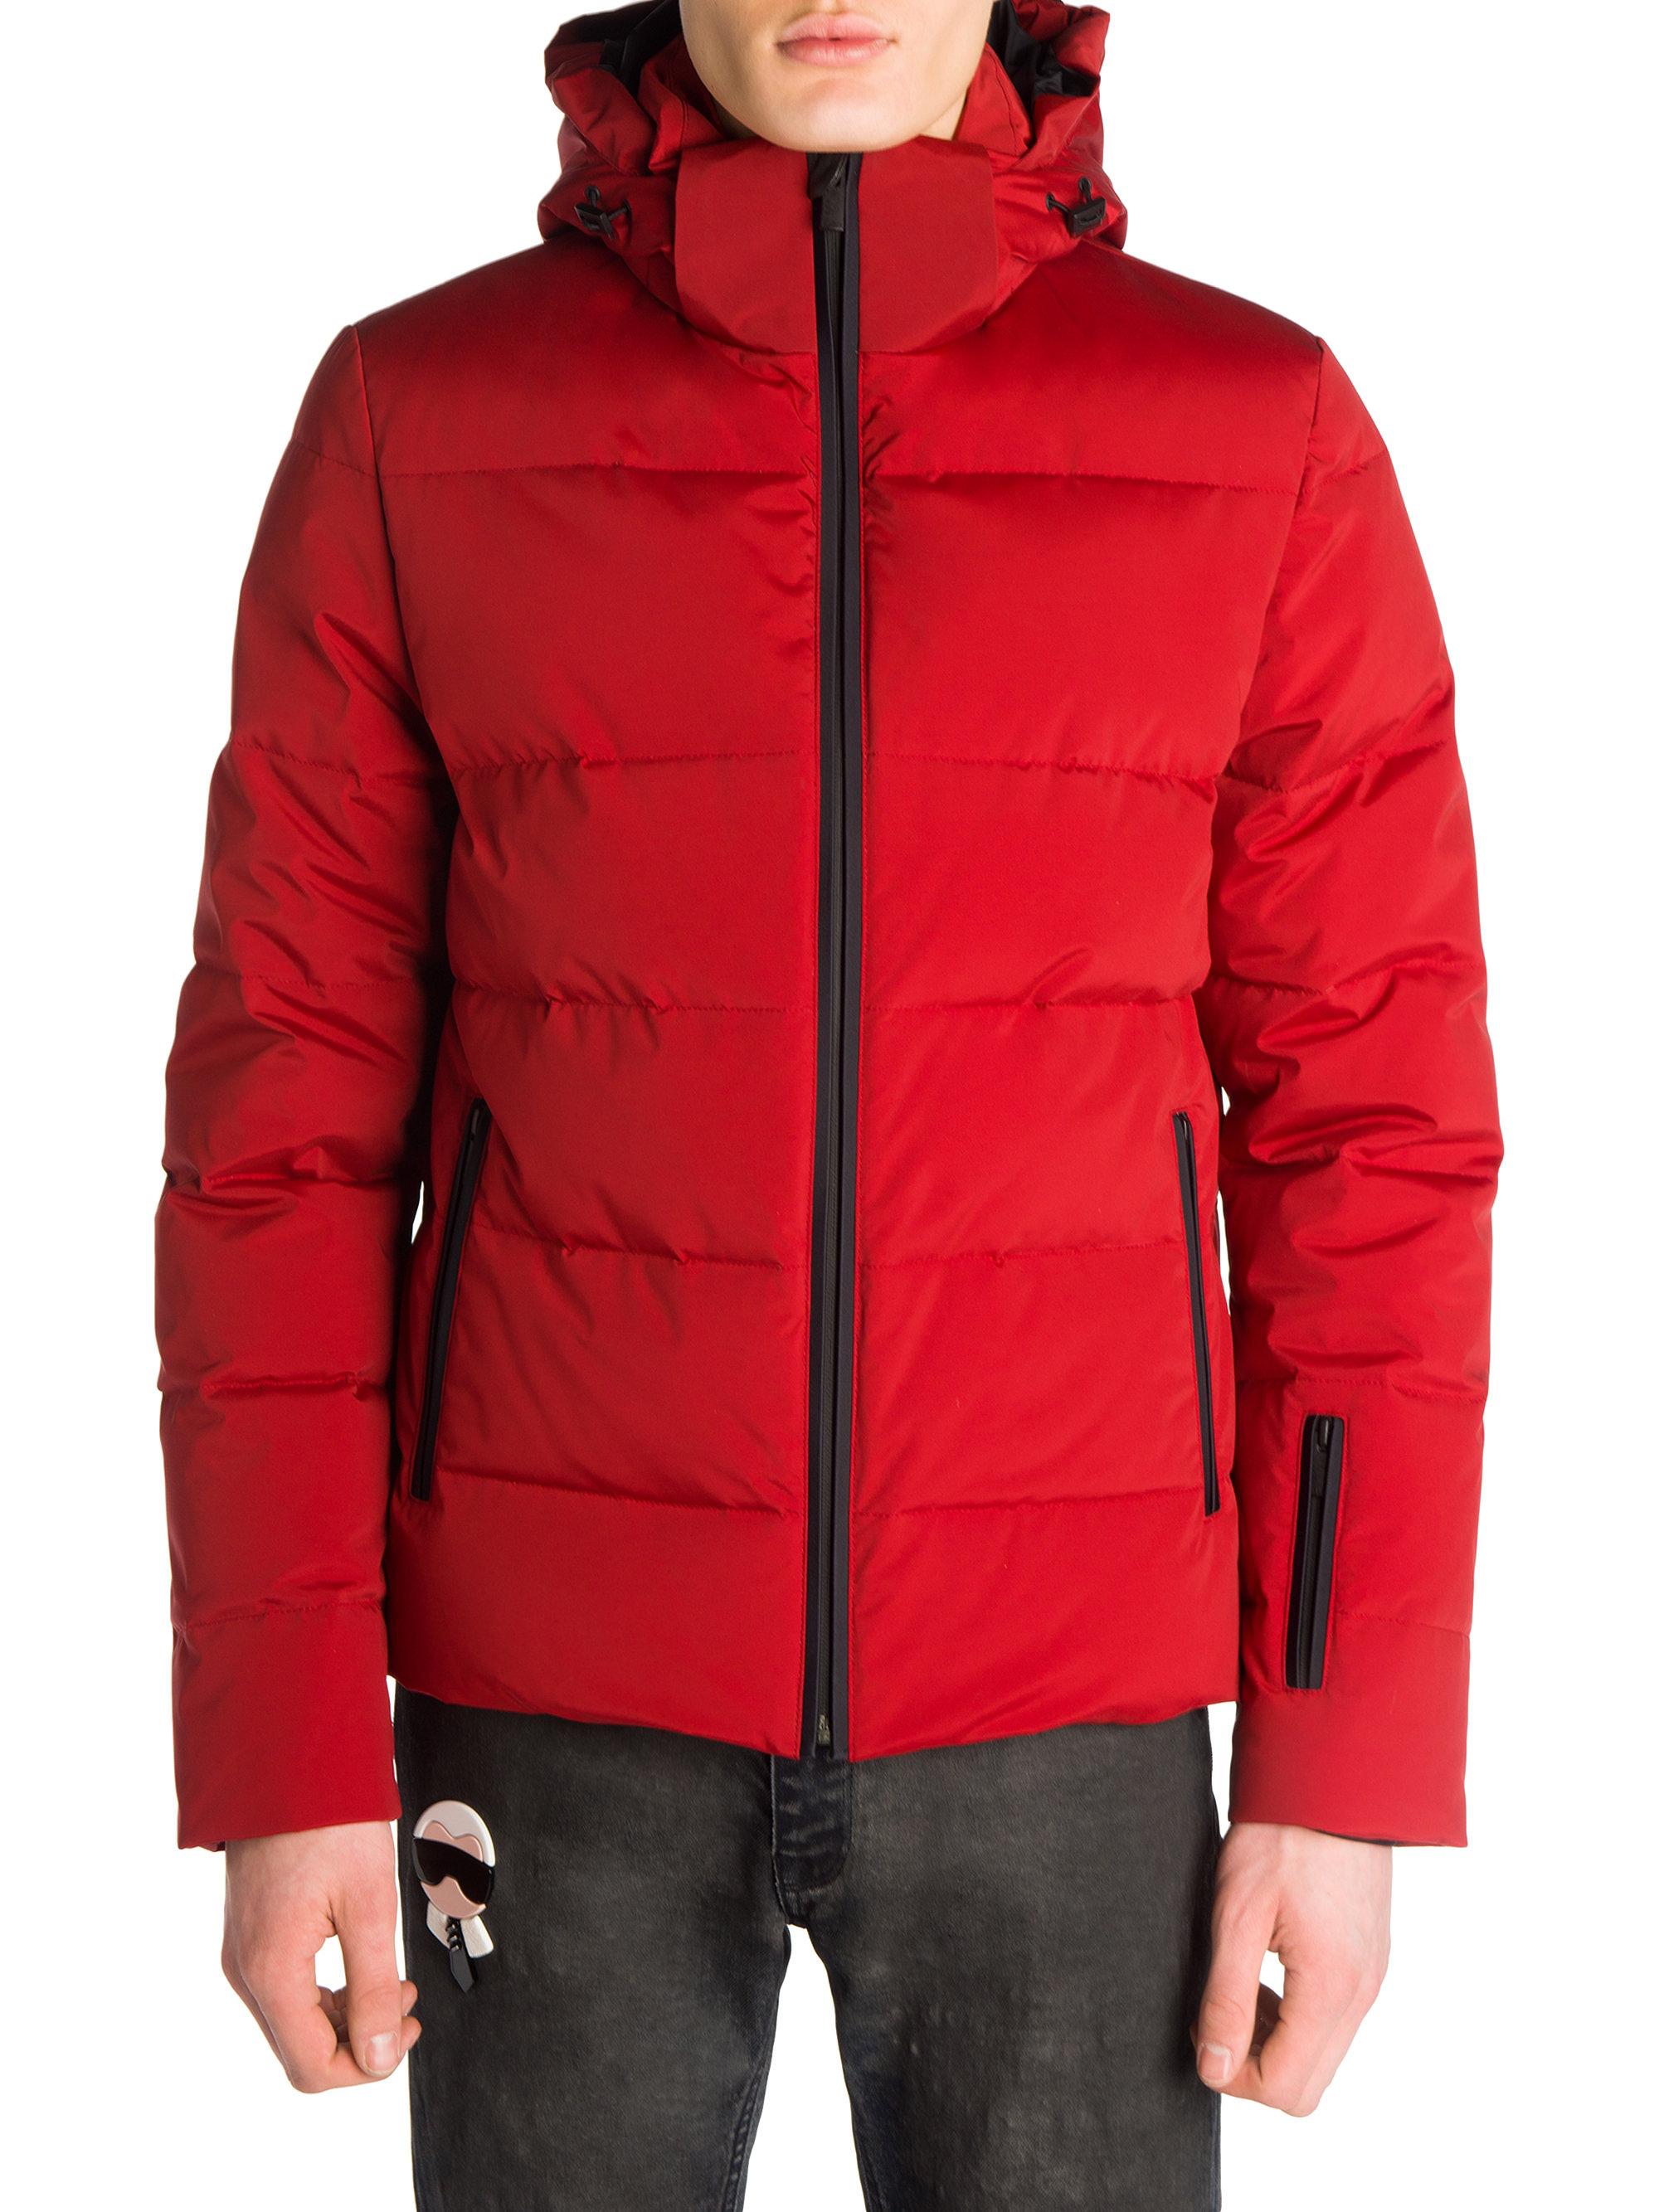 Lyst - Fendi Monster Puffer Jacket in Red for Men